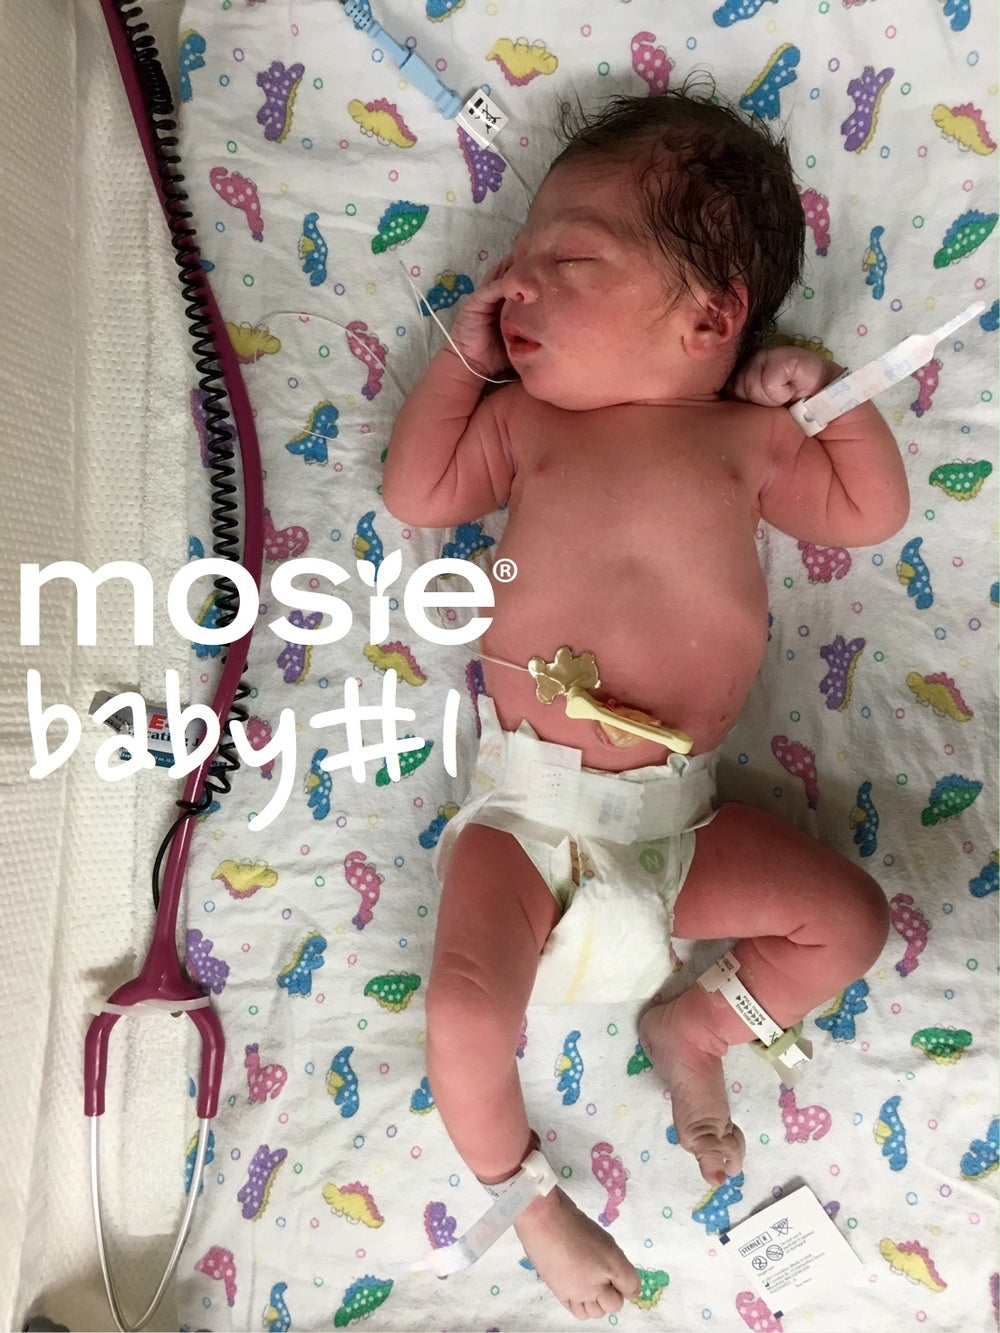 newborn mosie baby, Son of the creators of Mosie